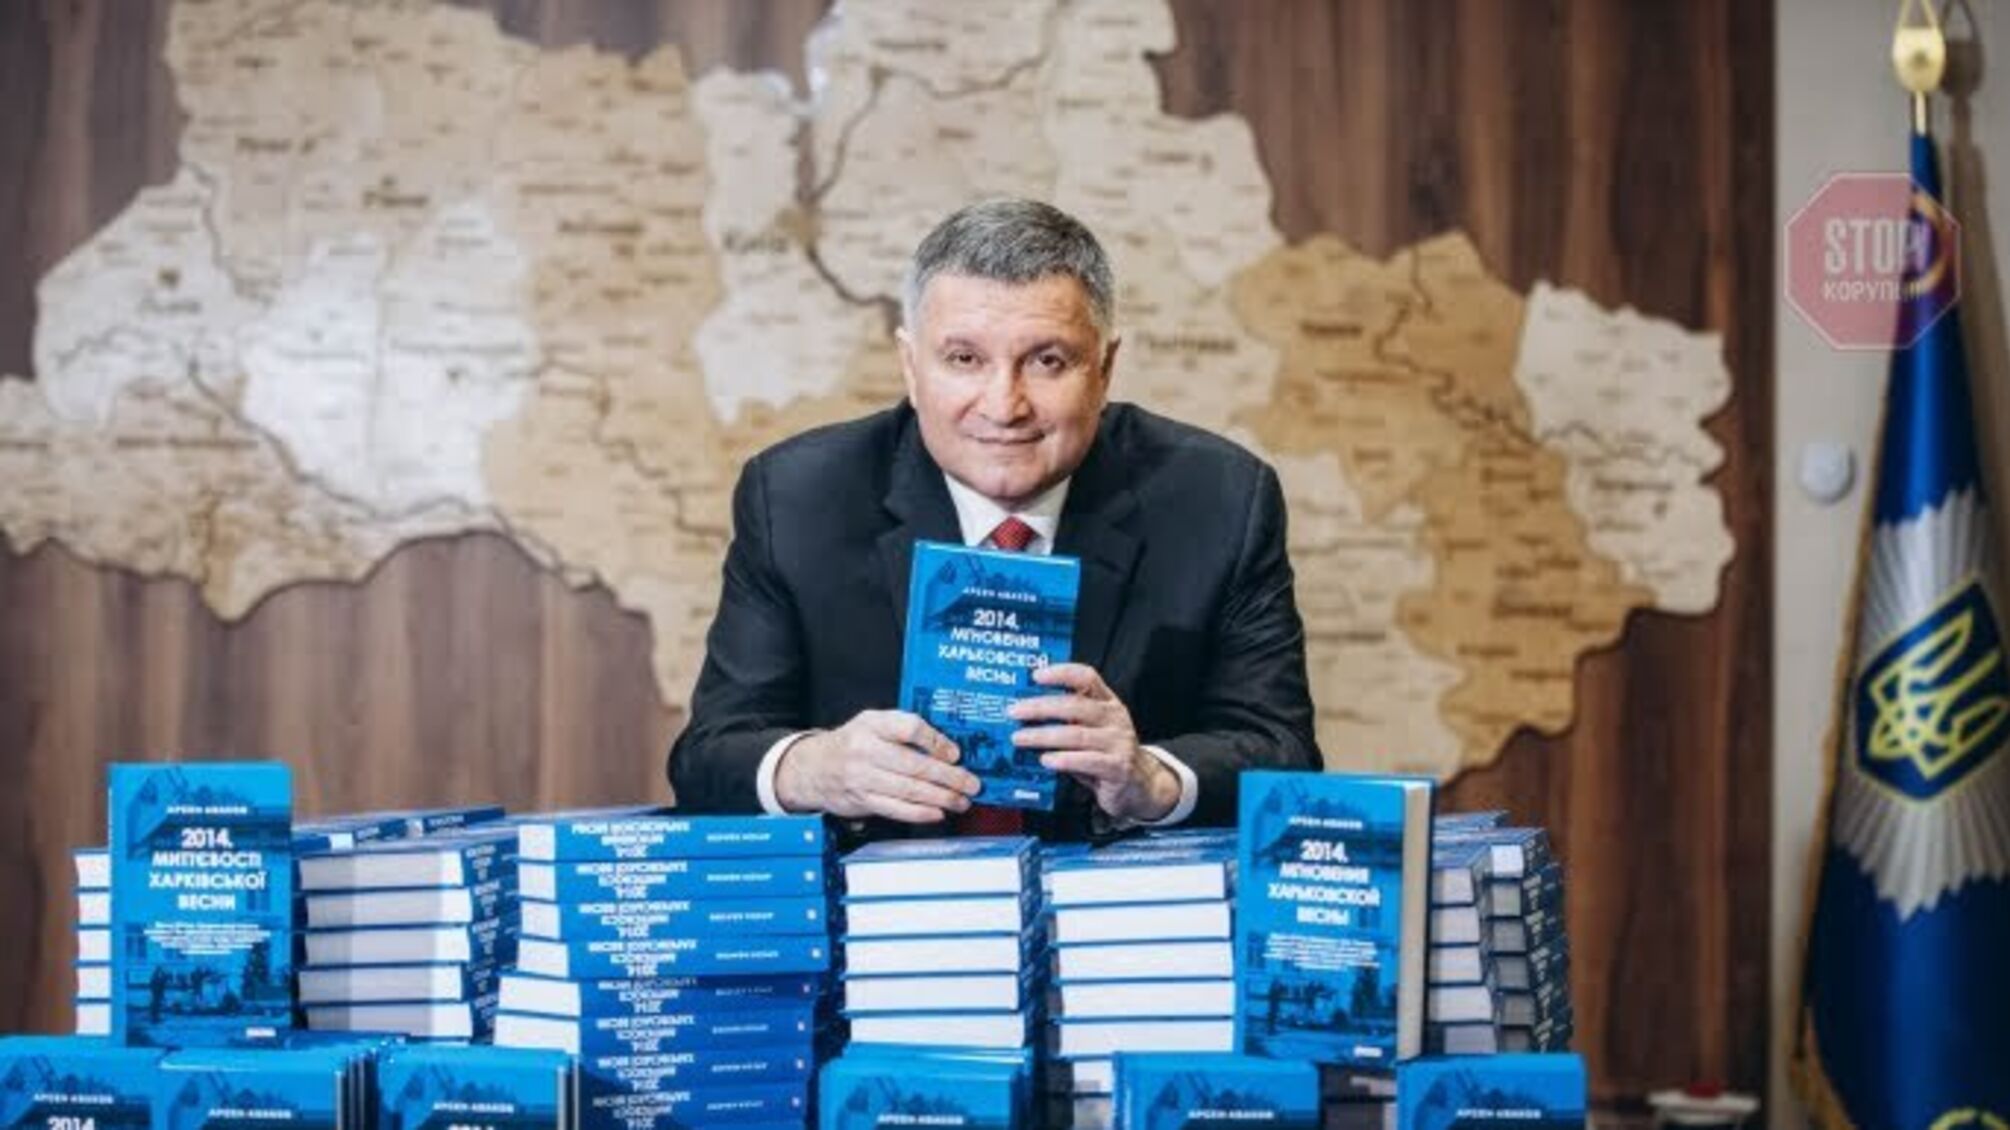 Аваков опубликовал новую книгу - с разговорами между сепаратистами и разведданными